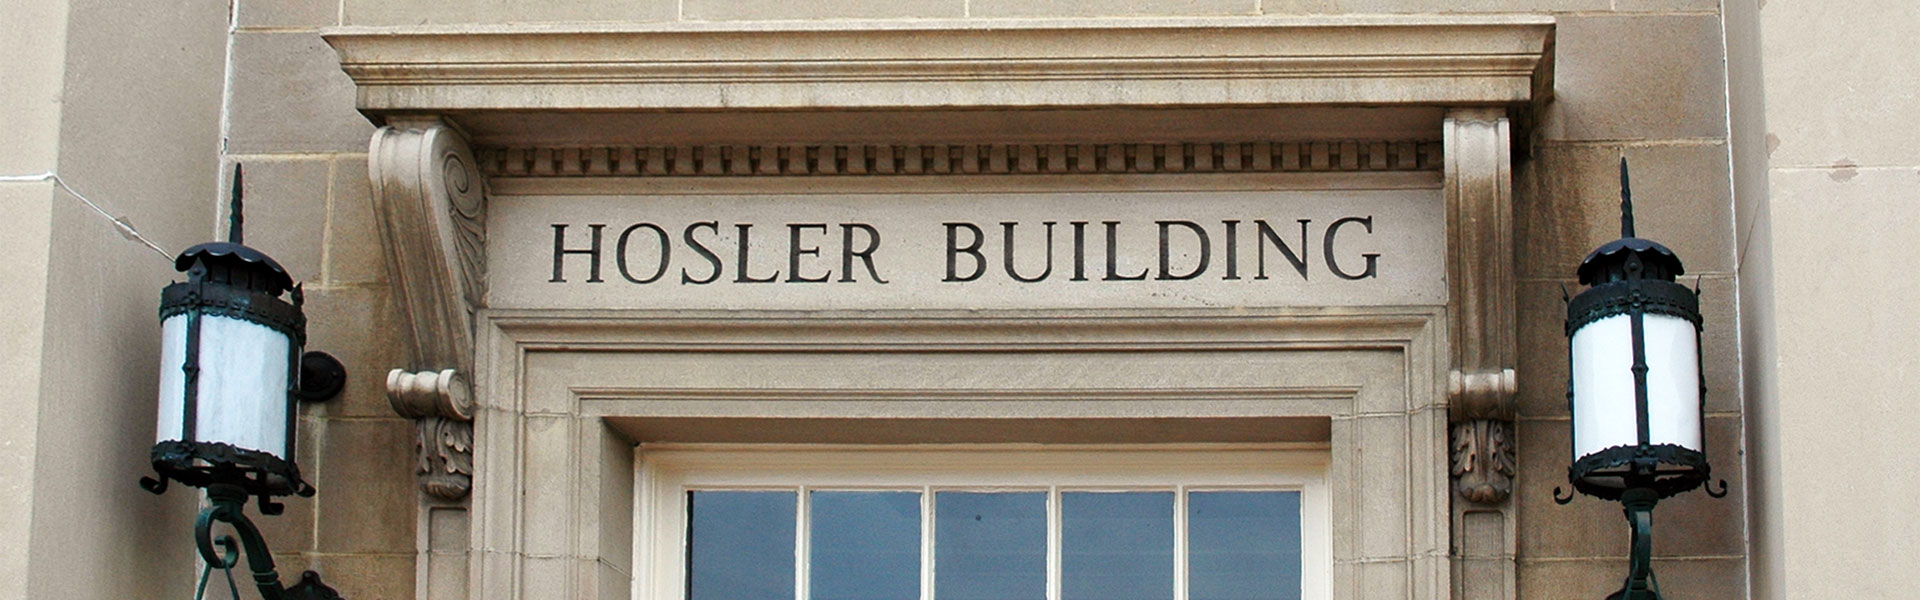 Hosler building